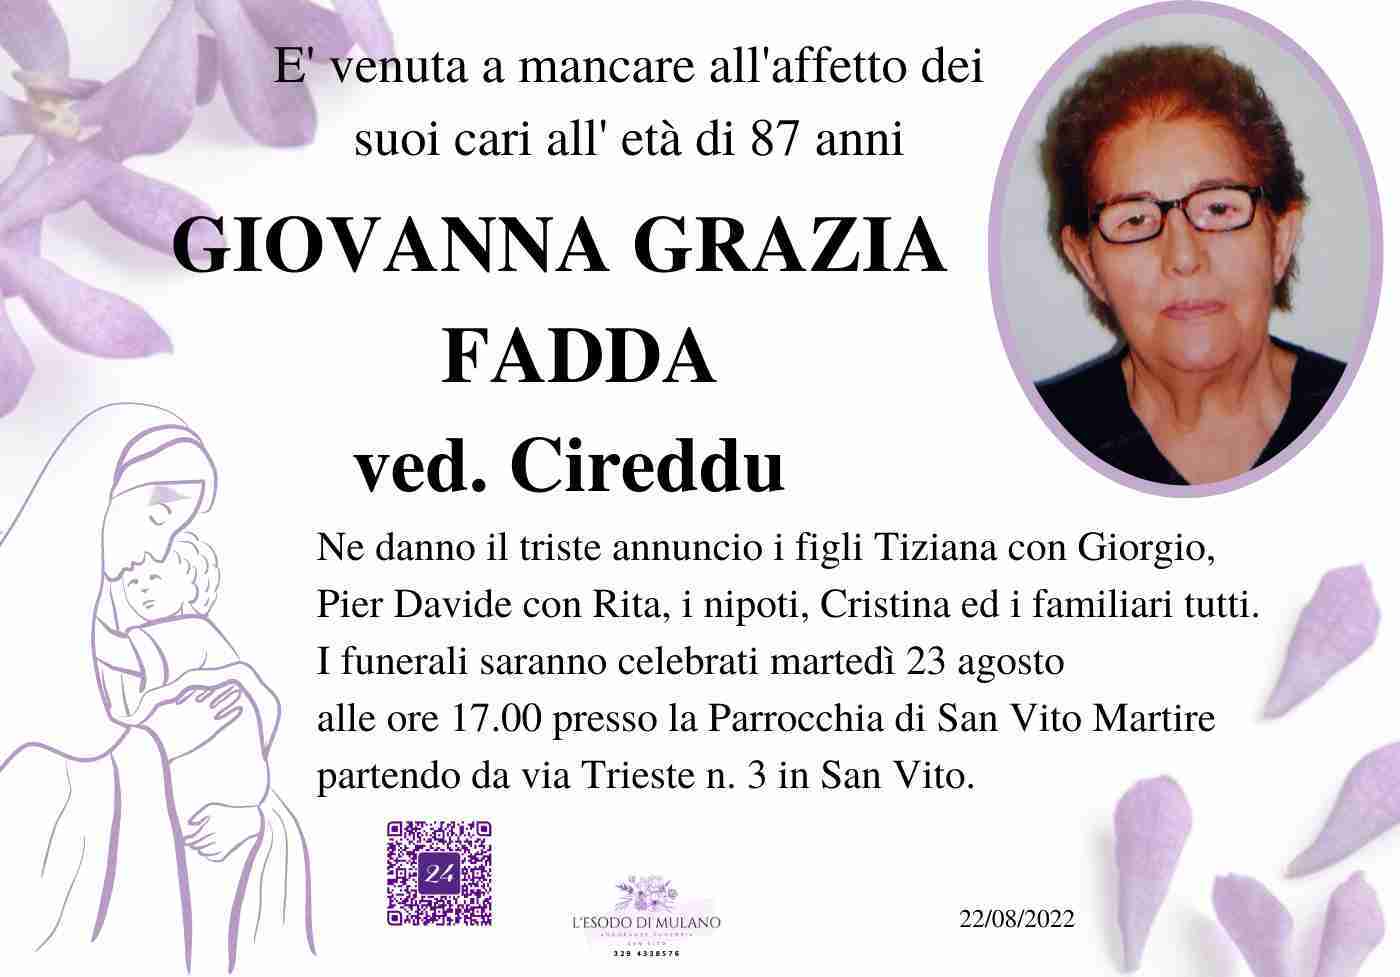 Giovanna Grazia Fadda